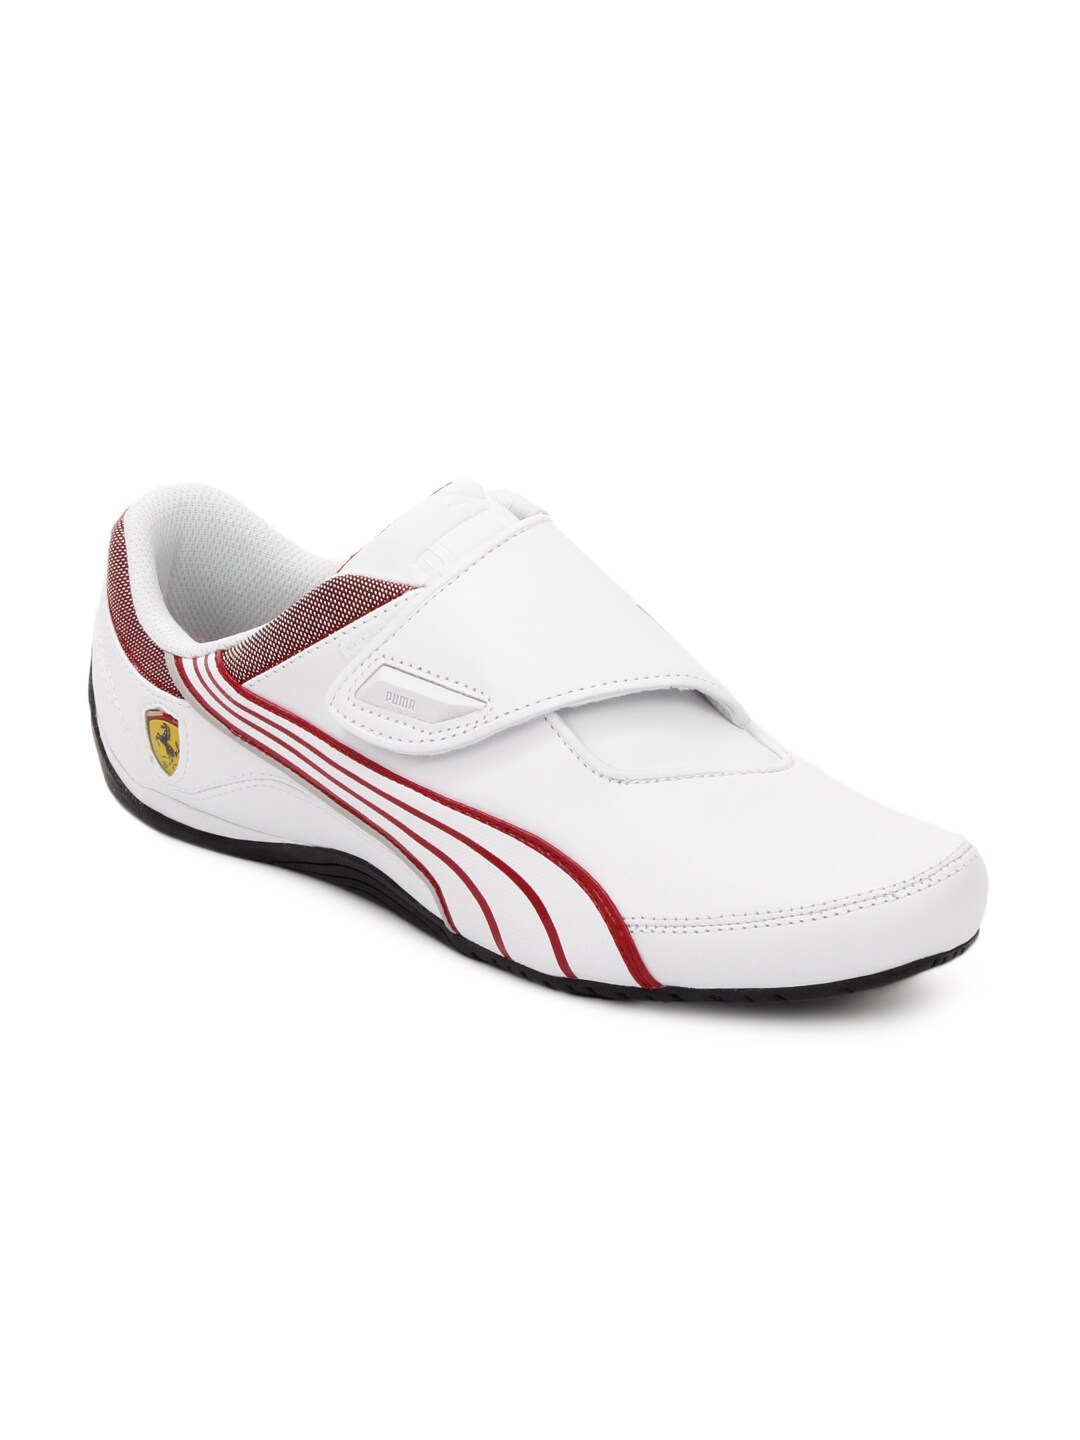 Puma Men White Drift Shoes